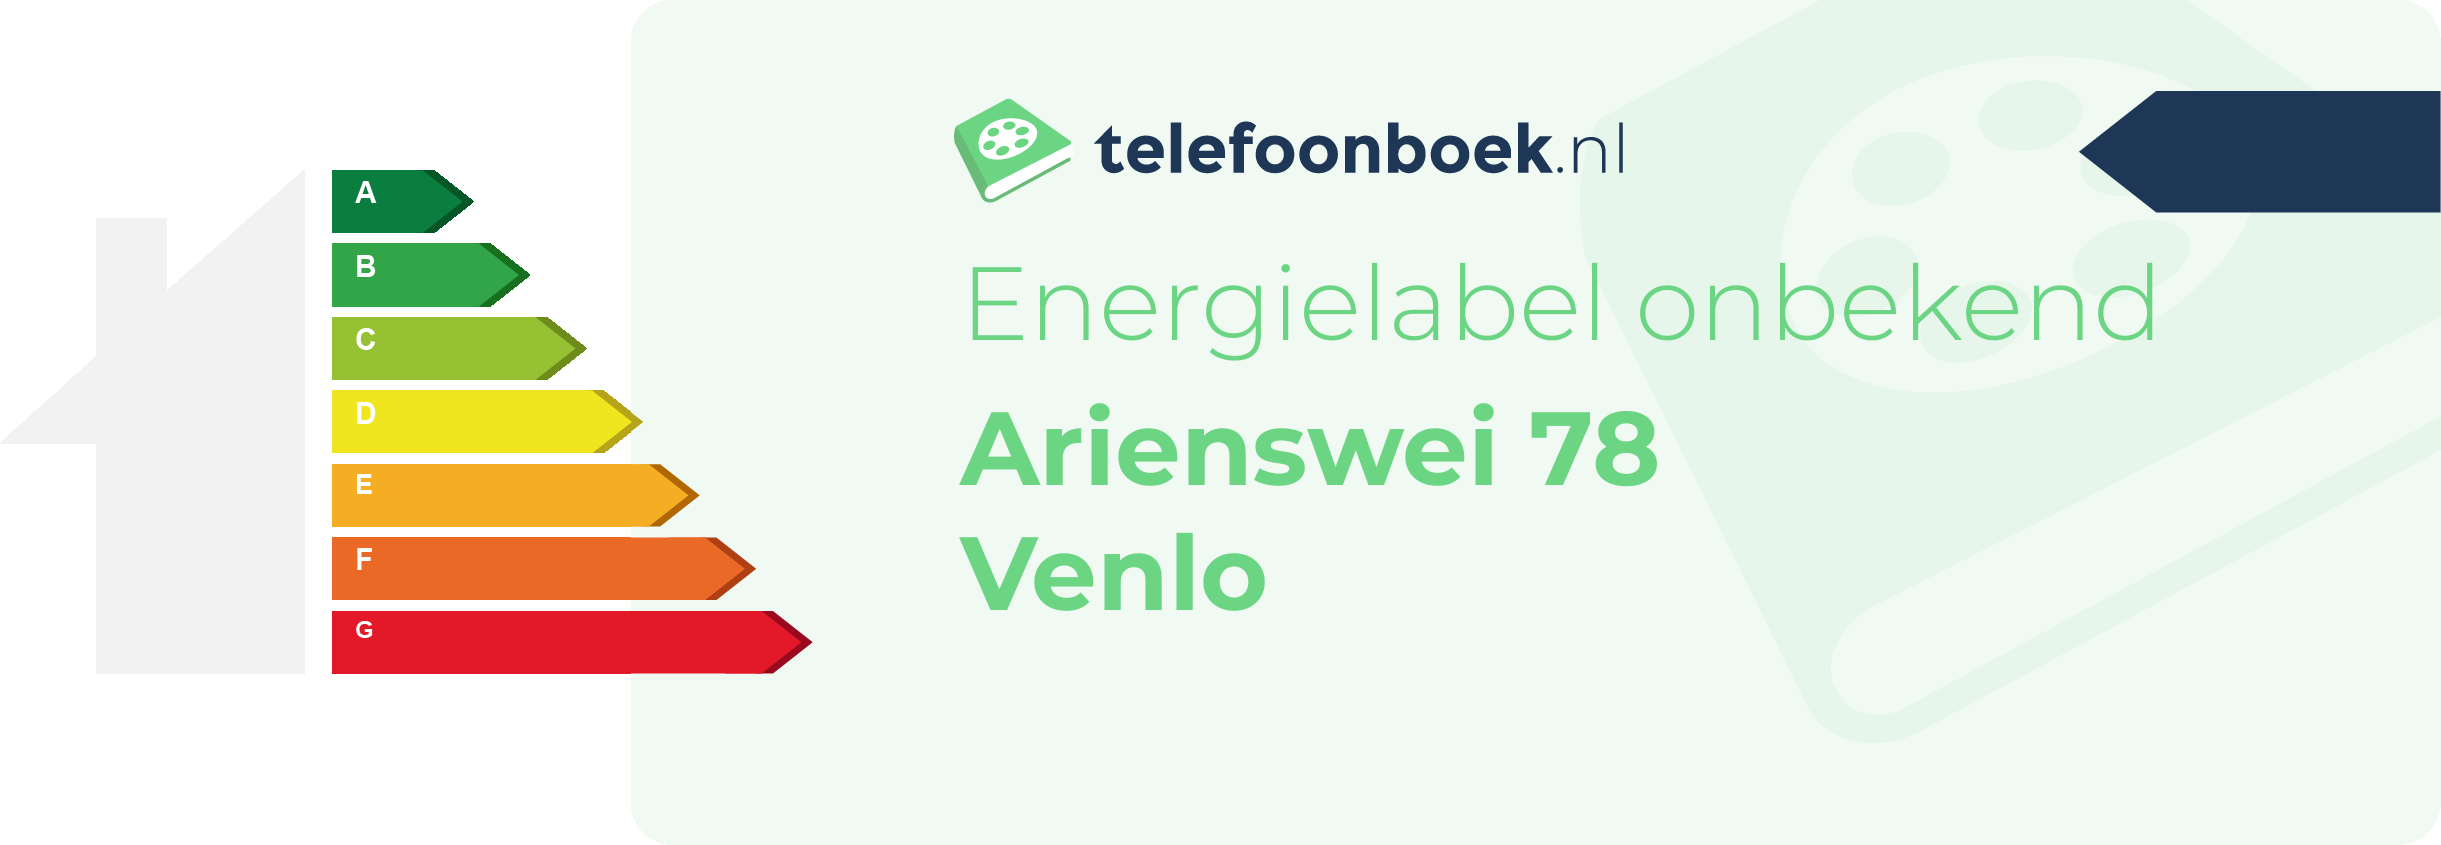 Energielabel Arienswei 78 Venlo